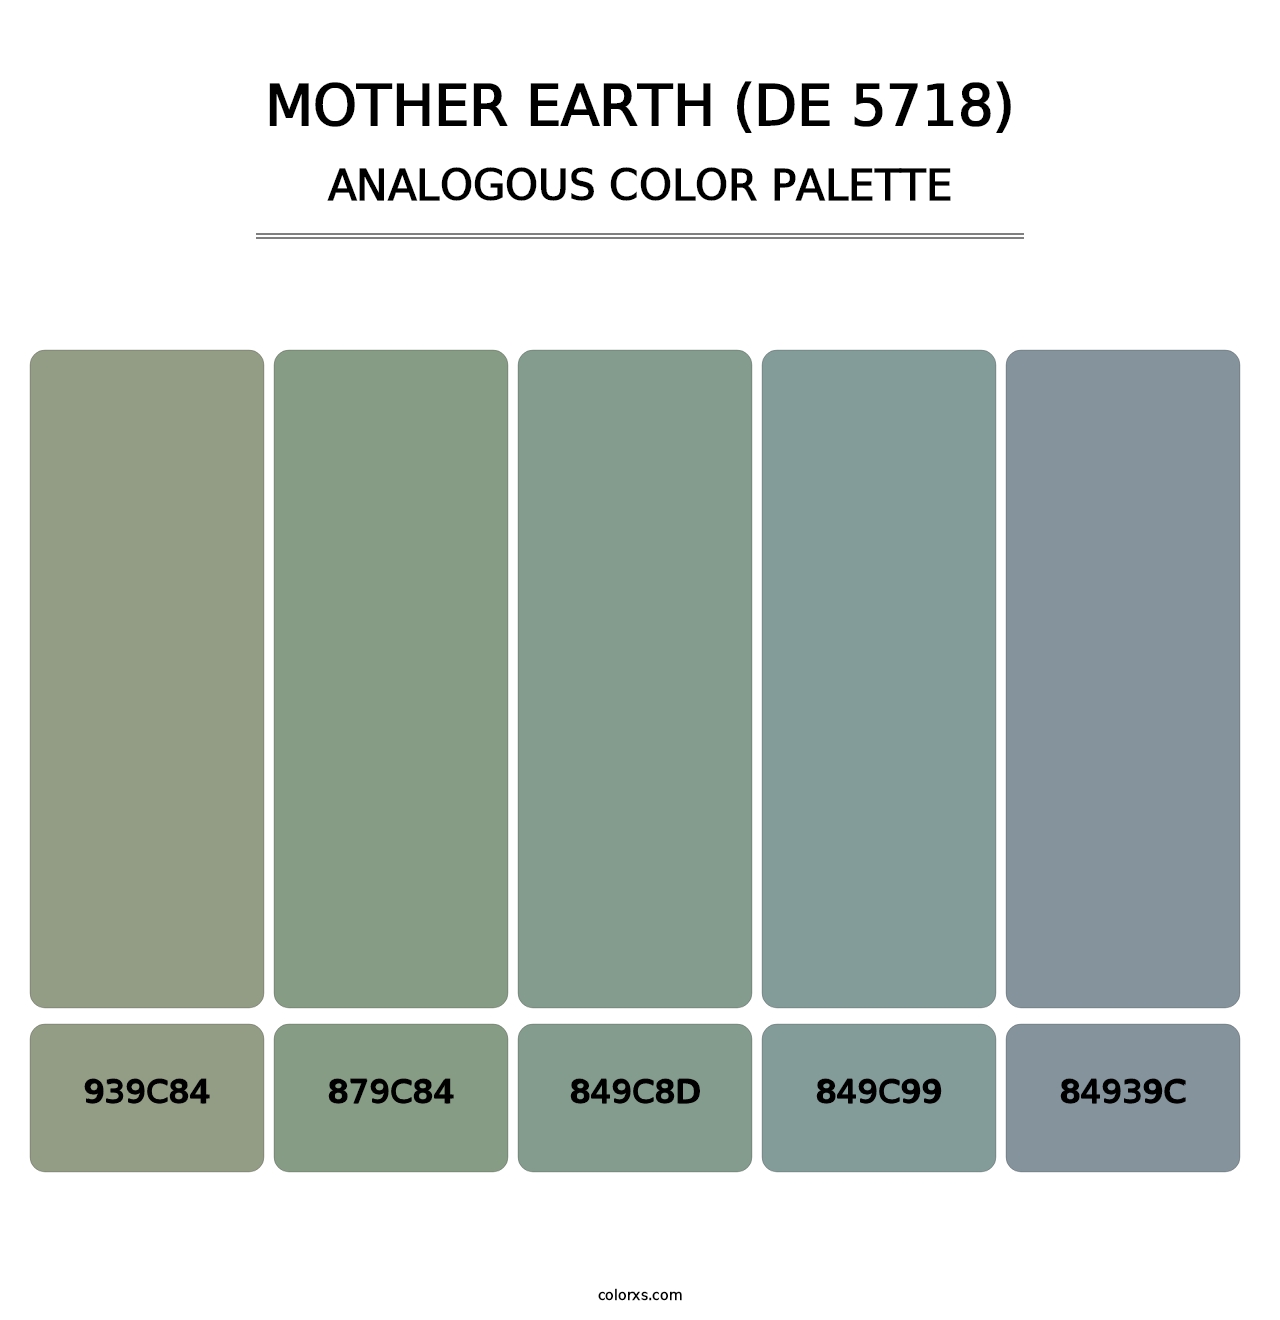 Mother Earth (DE 5718) - Analogous Color Palette